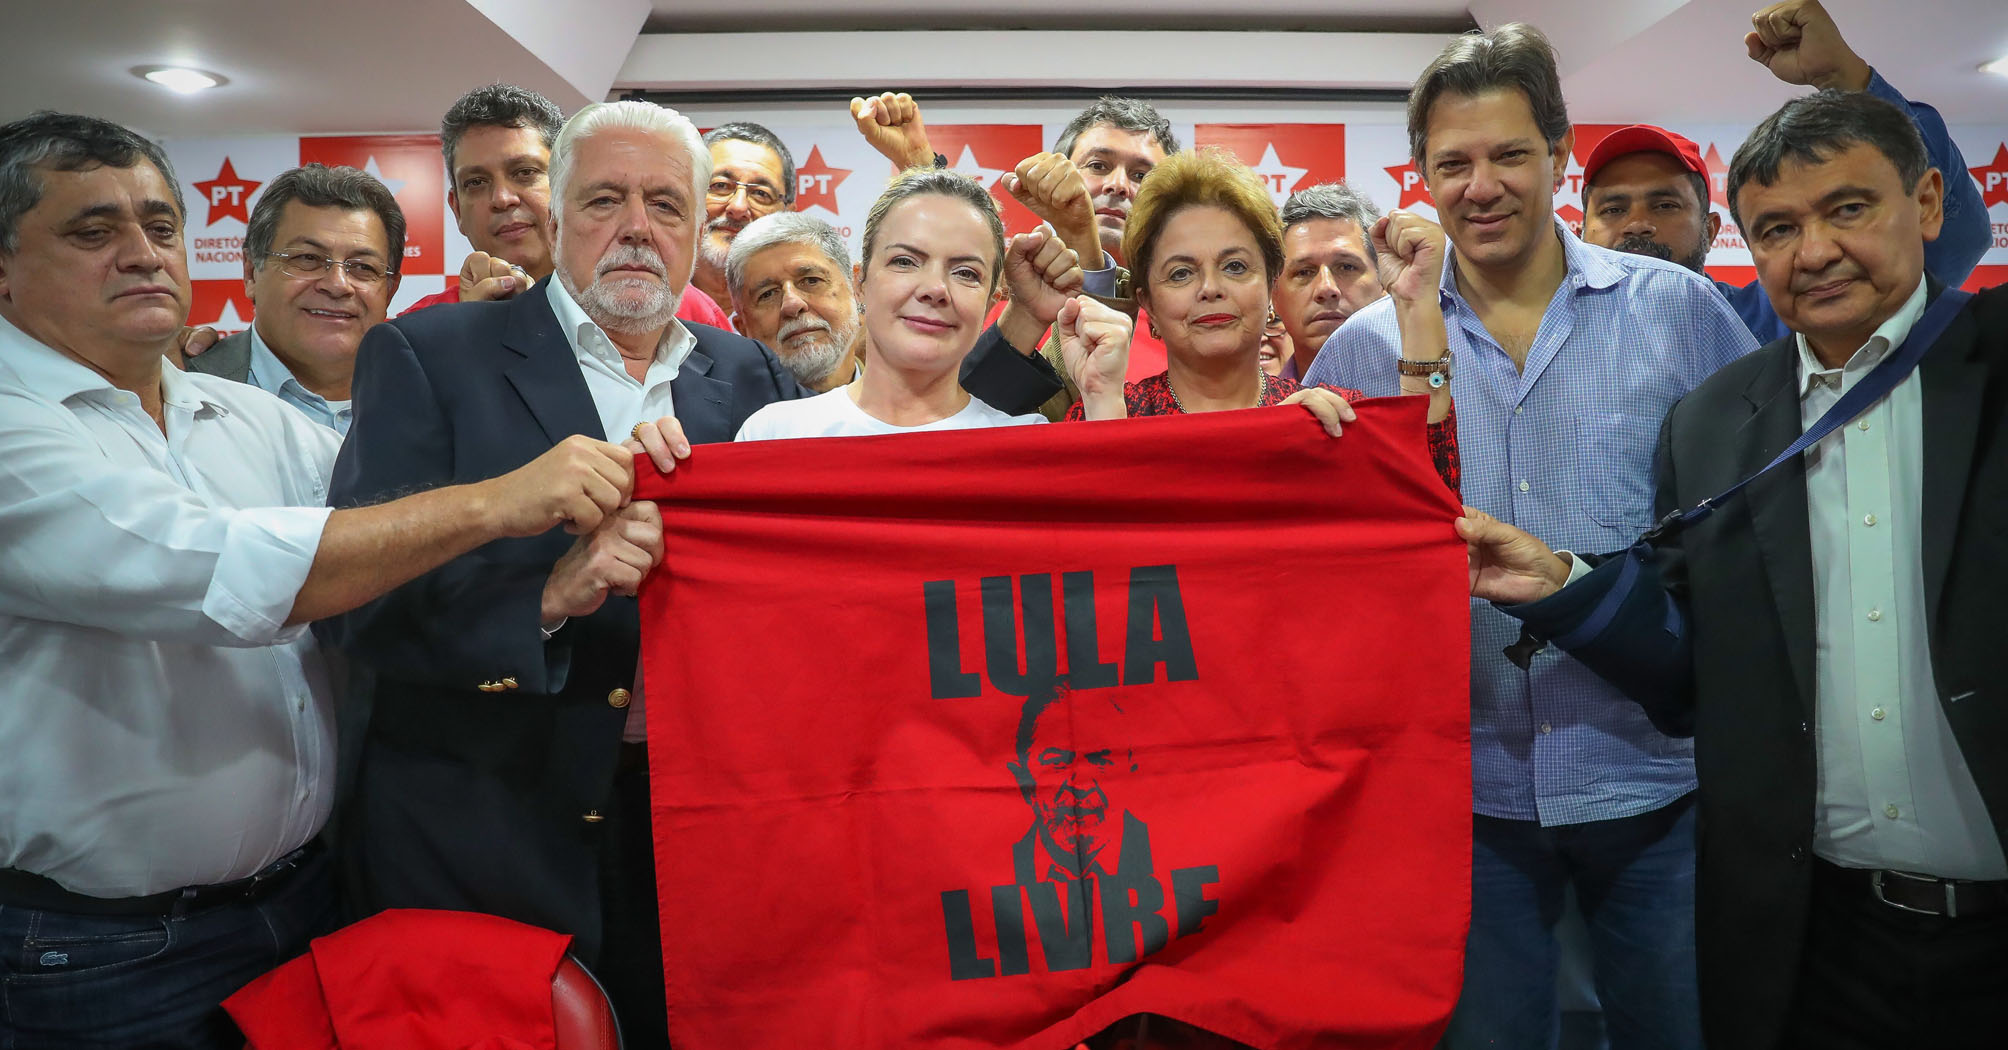 PT, PSOL e PCdoB anunciam boicote à posse de Jair Bolsonaro